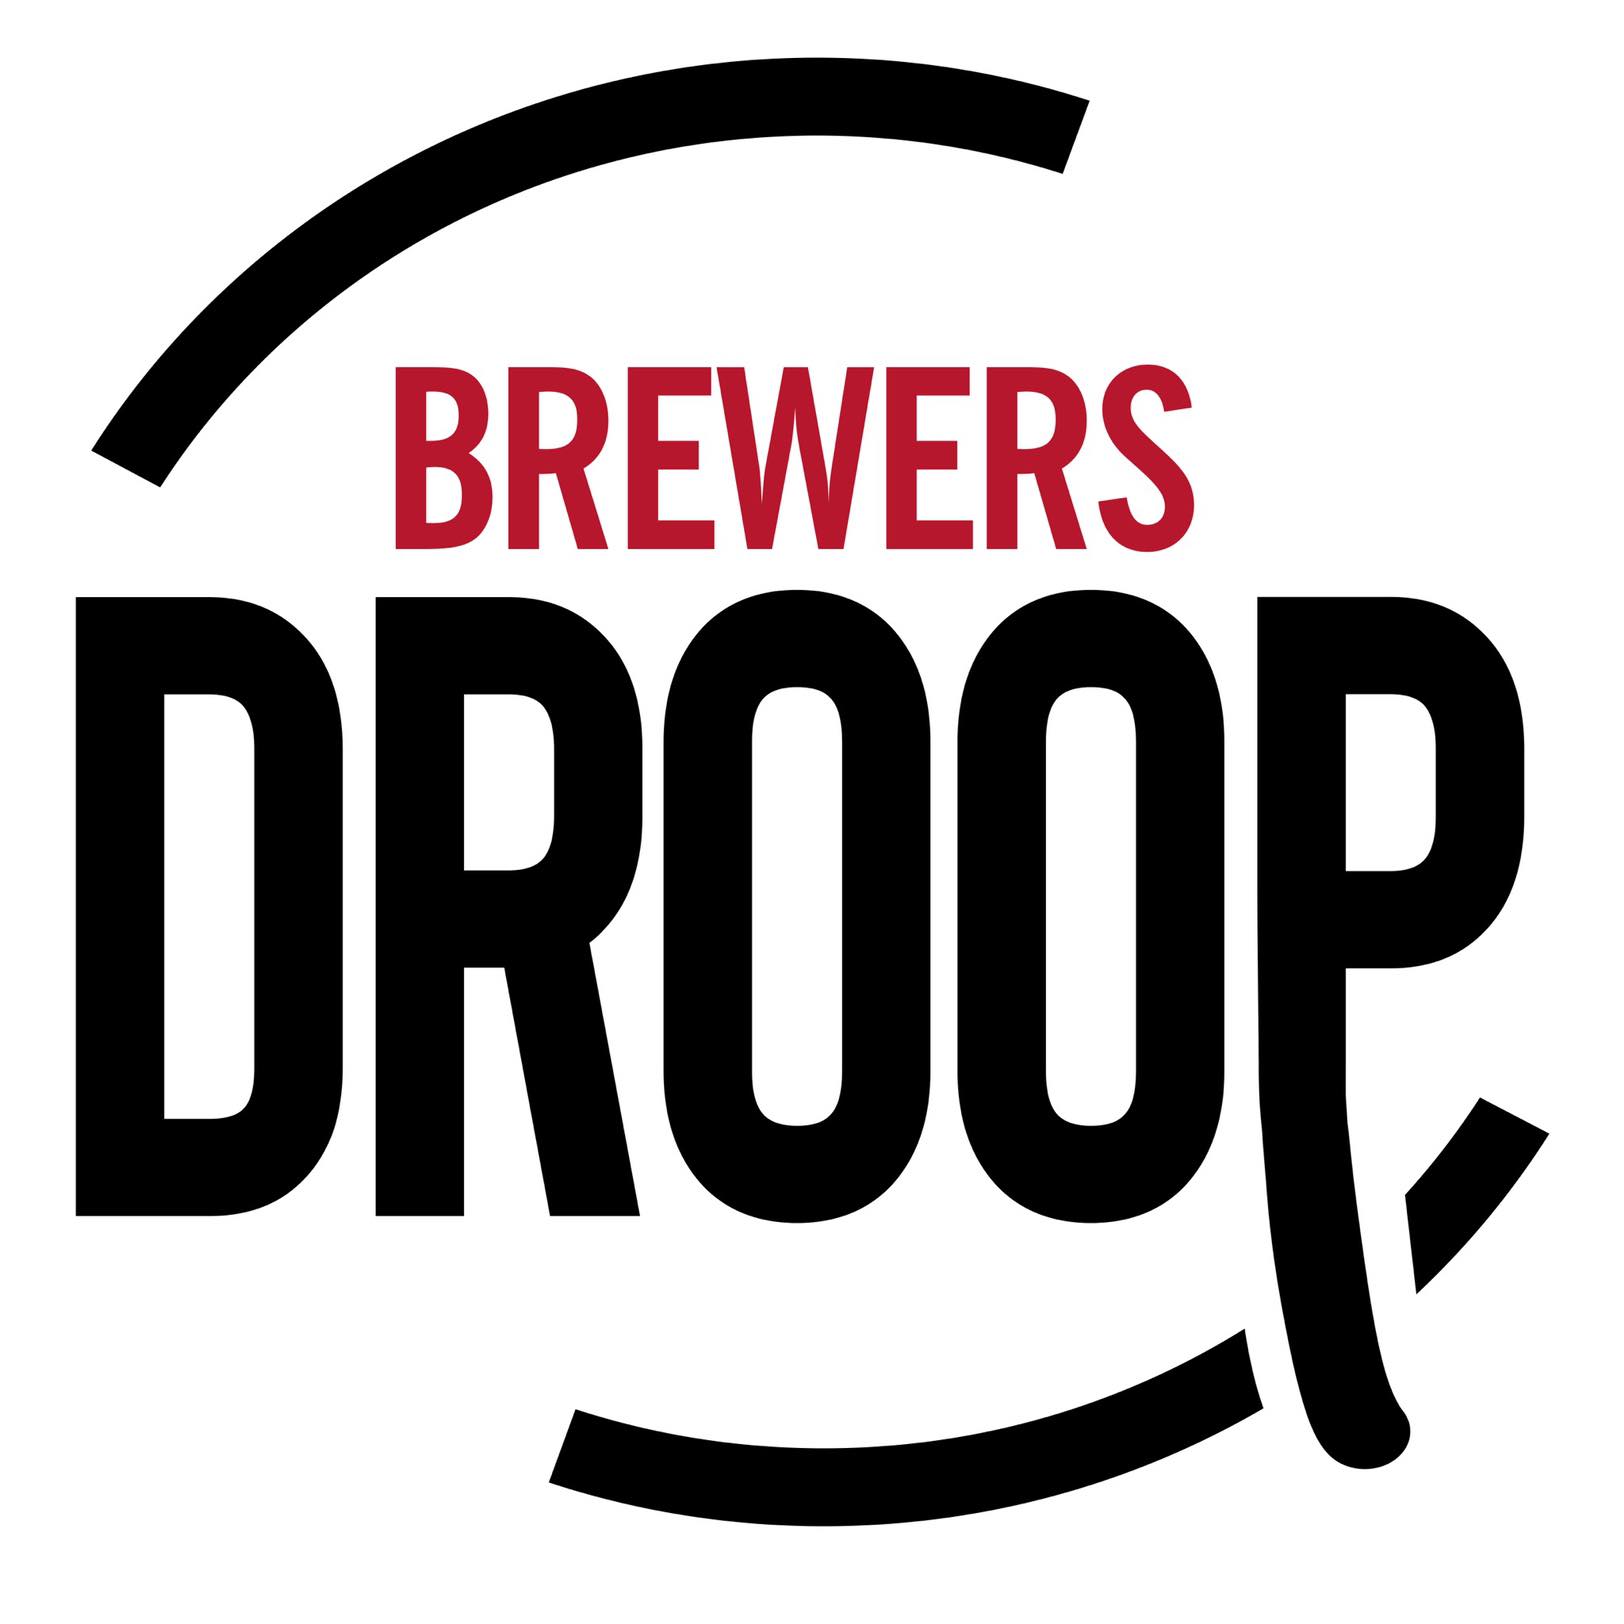 Brewers Droop